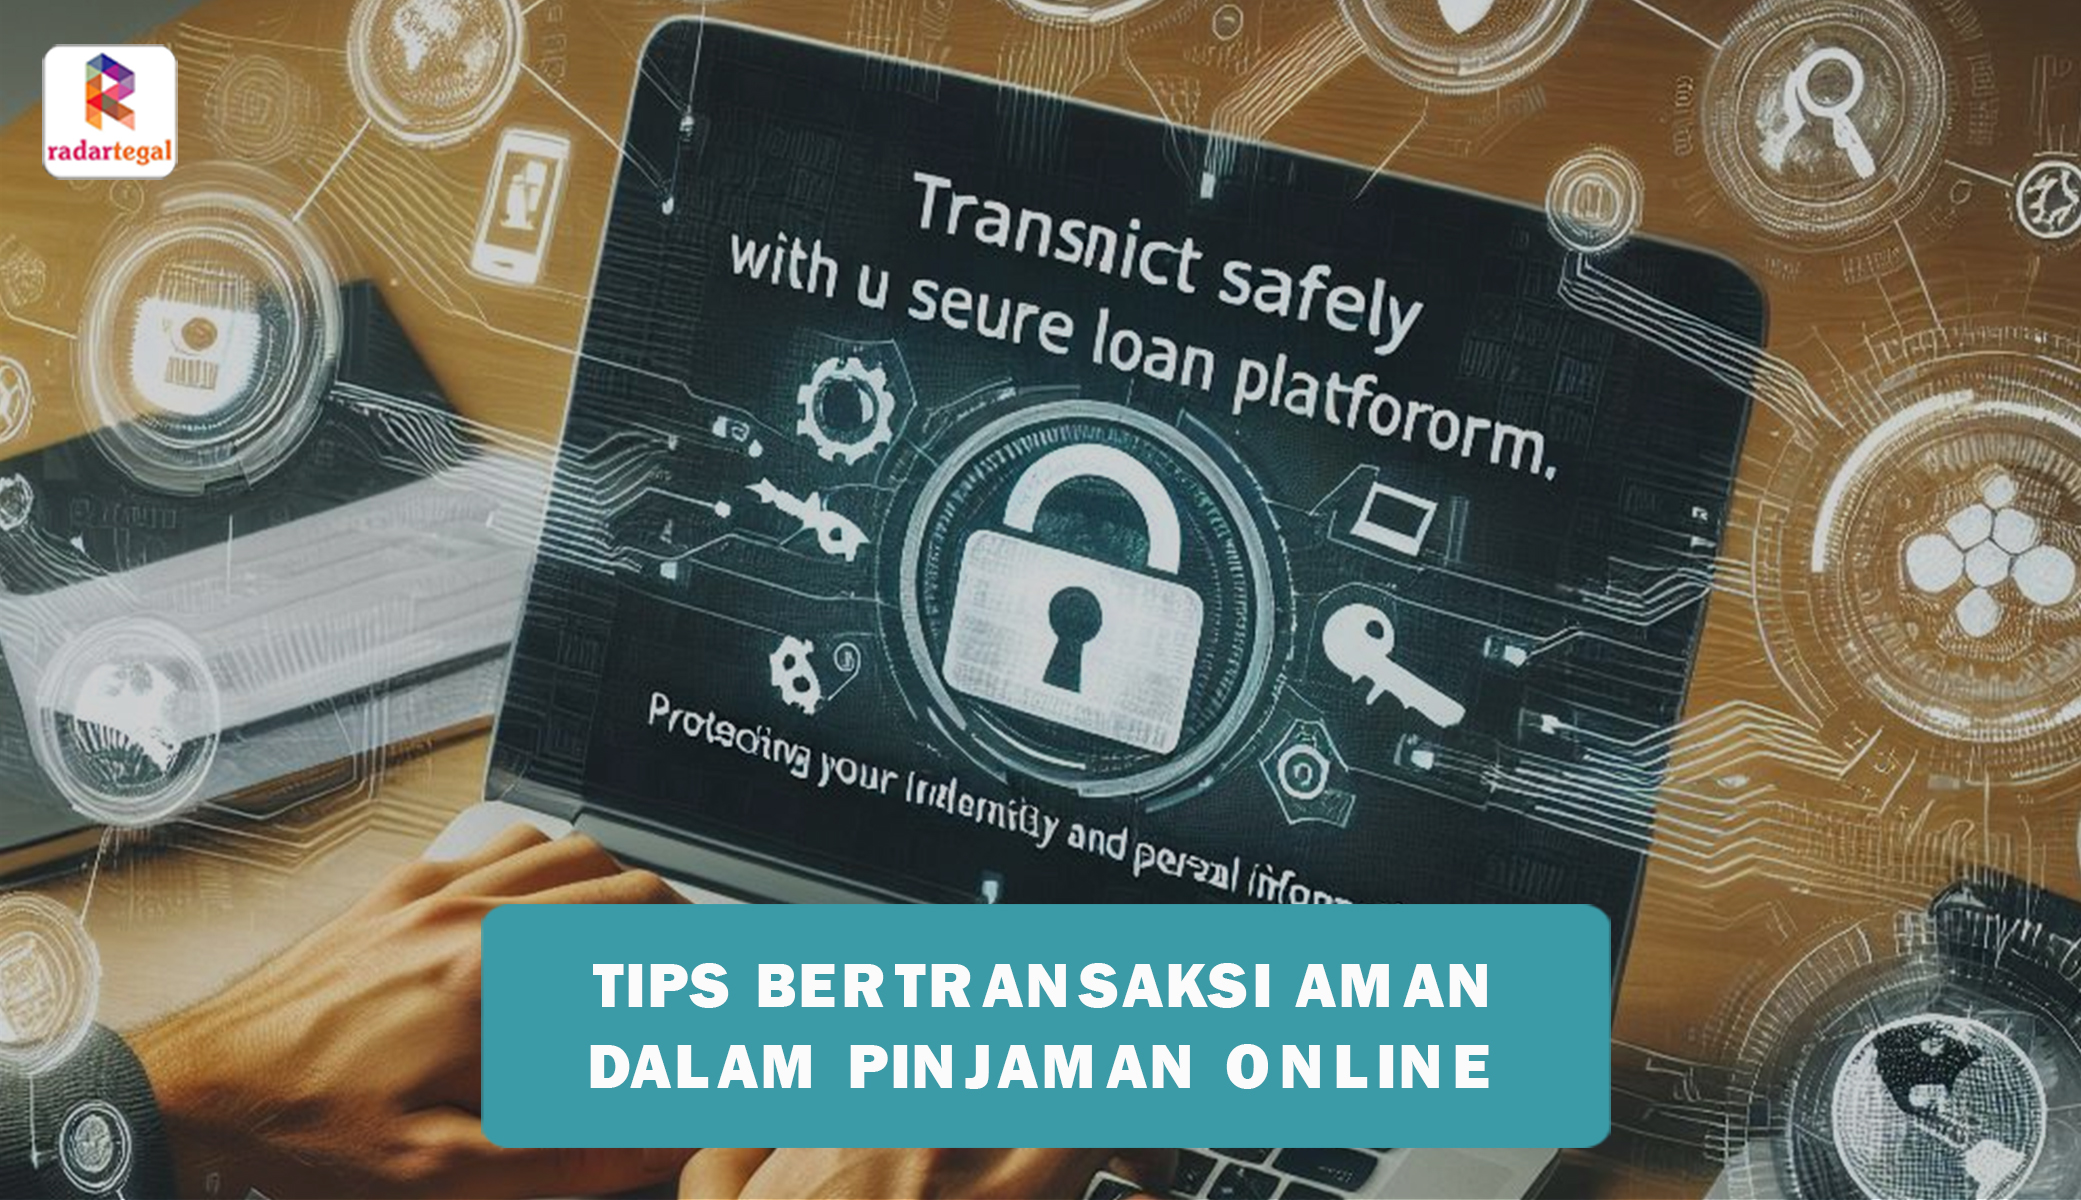 Tips Bertransaksi Aman dalam Pinjaman Online agar Tidak Tertipu oleh Layanan Pinjol Bodong